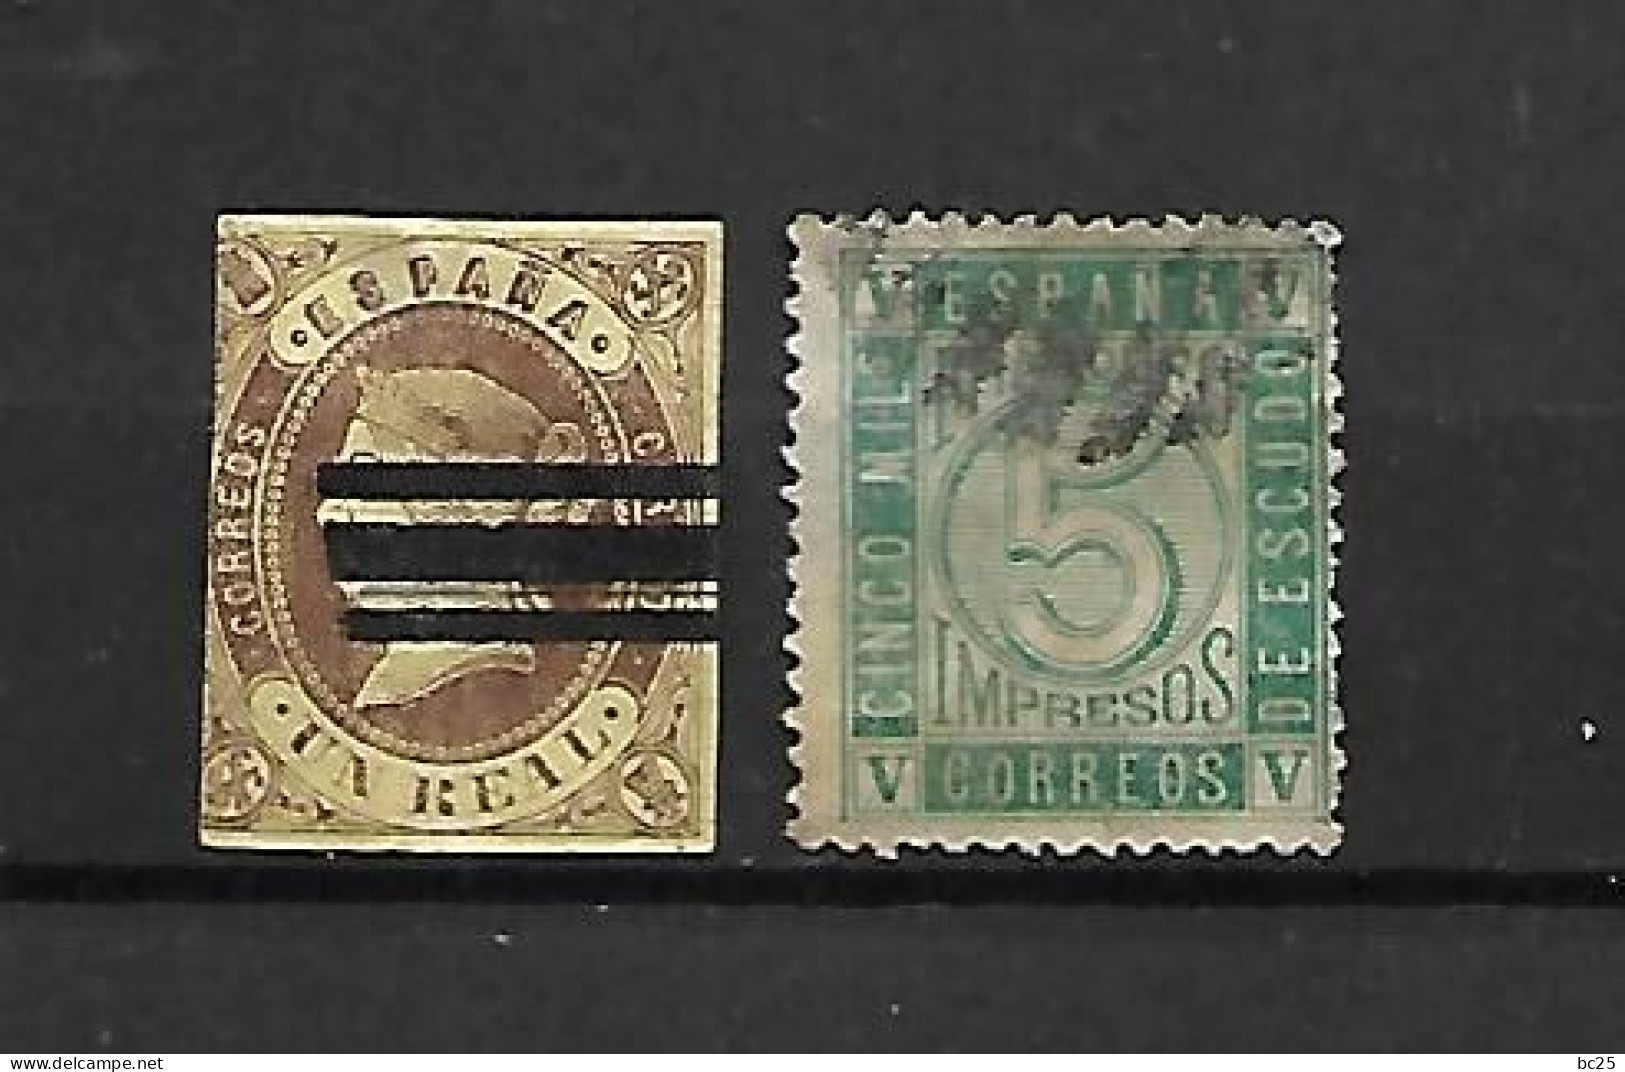 ESPAGNE -ISABELLE II-2 TRES BEAUX VIEUX TIMBRES OBLITERES N° 57-ET N° 93- PAS EMINCE-DE 1862-FAIT SCAN DU VERSO - Used Stamps